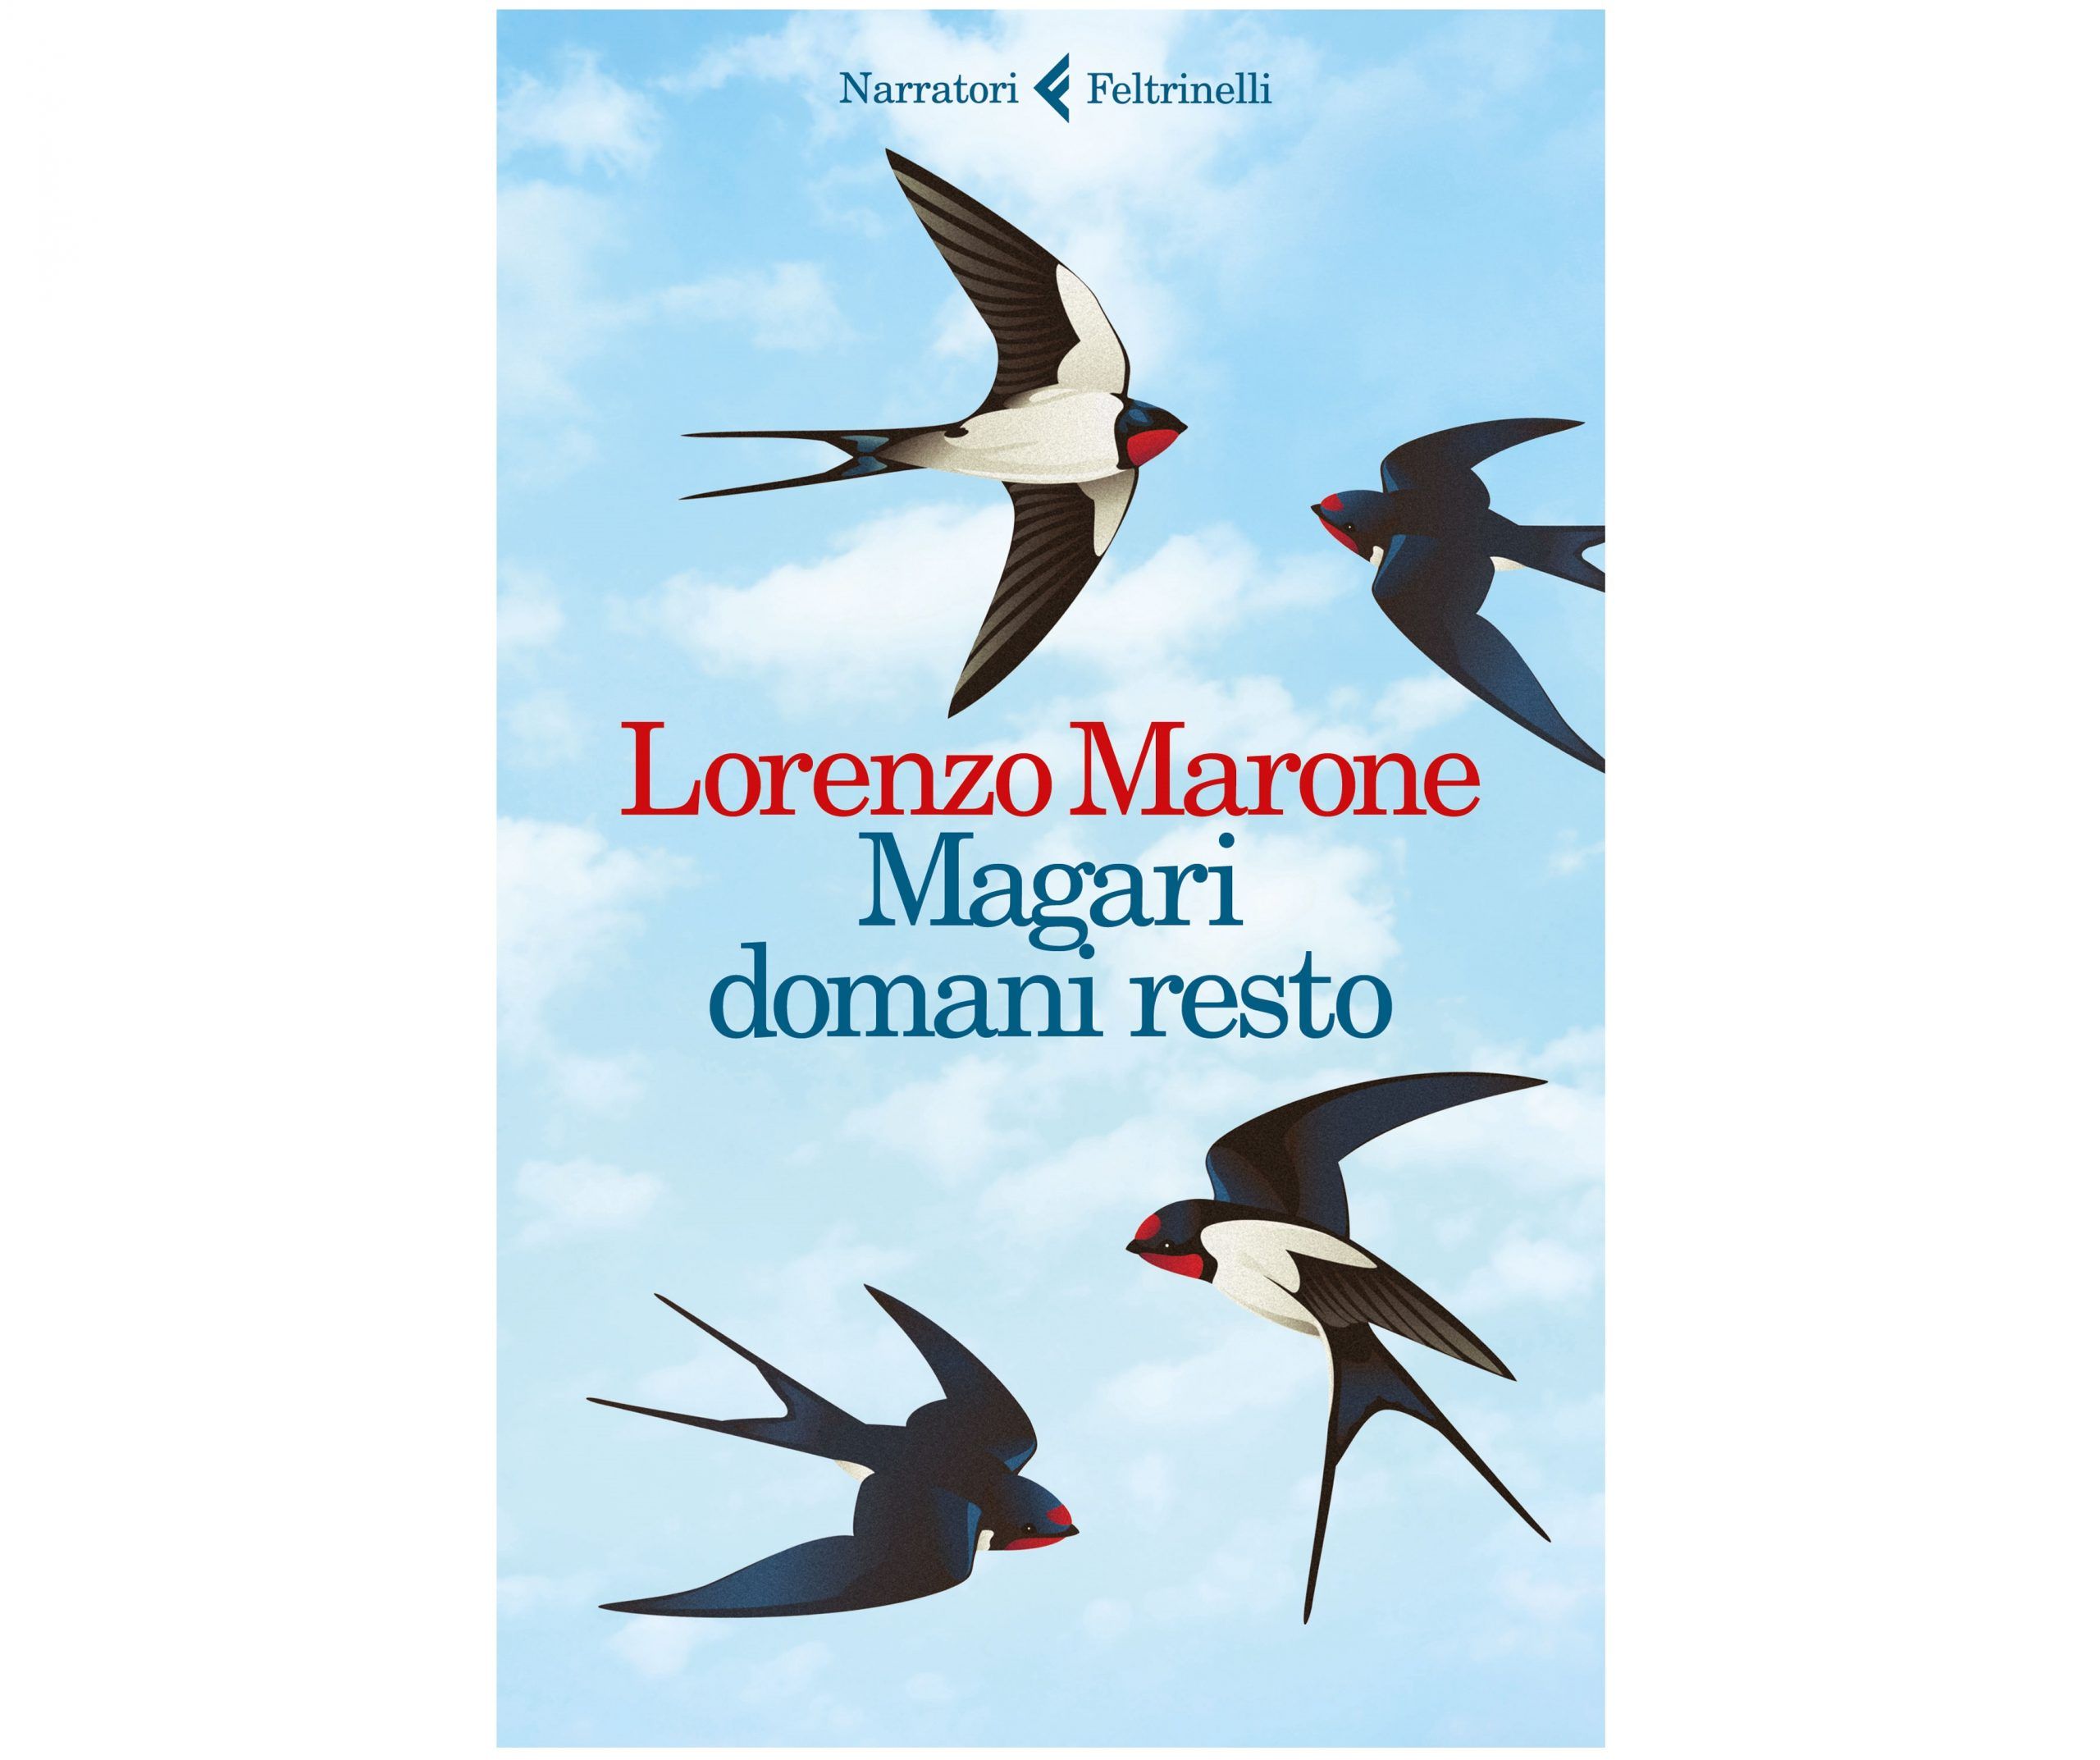 Magari domani resto, il libro di Lorenzo Marone: ‘Racconto la mia Napoli popolare’